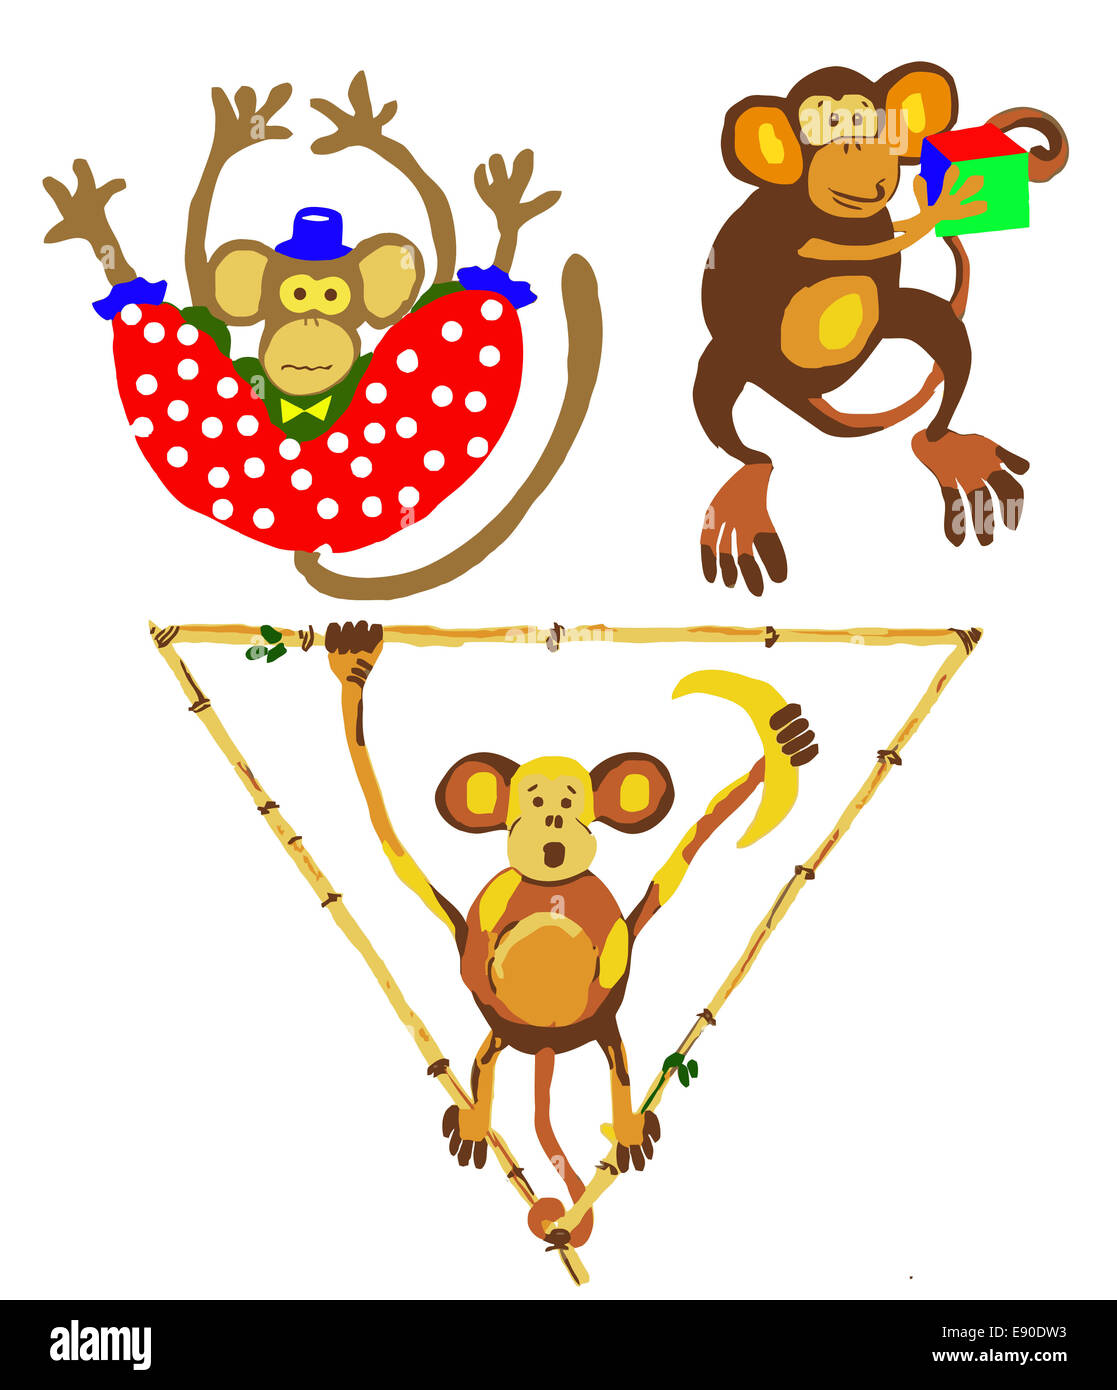 Illustration des singes dans le cirque Banque D'Images